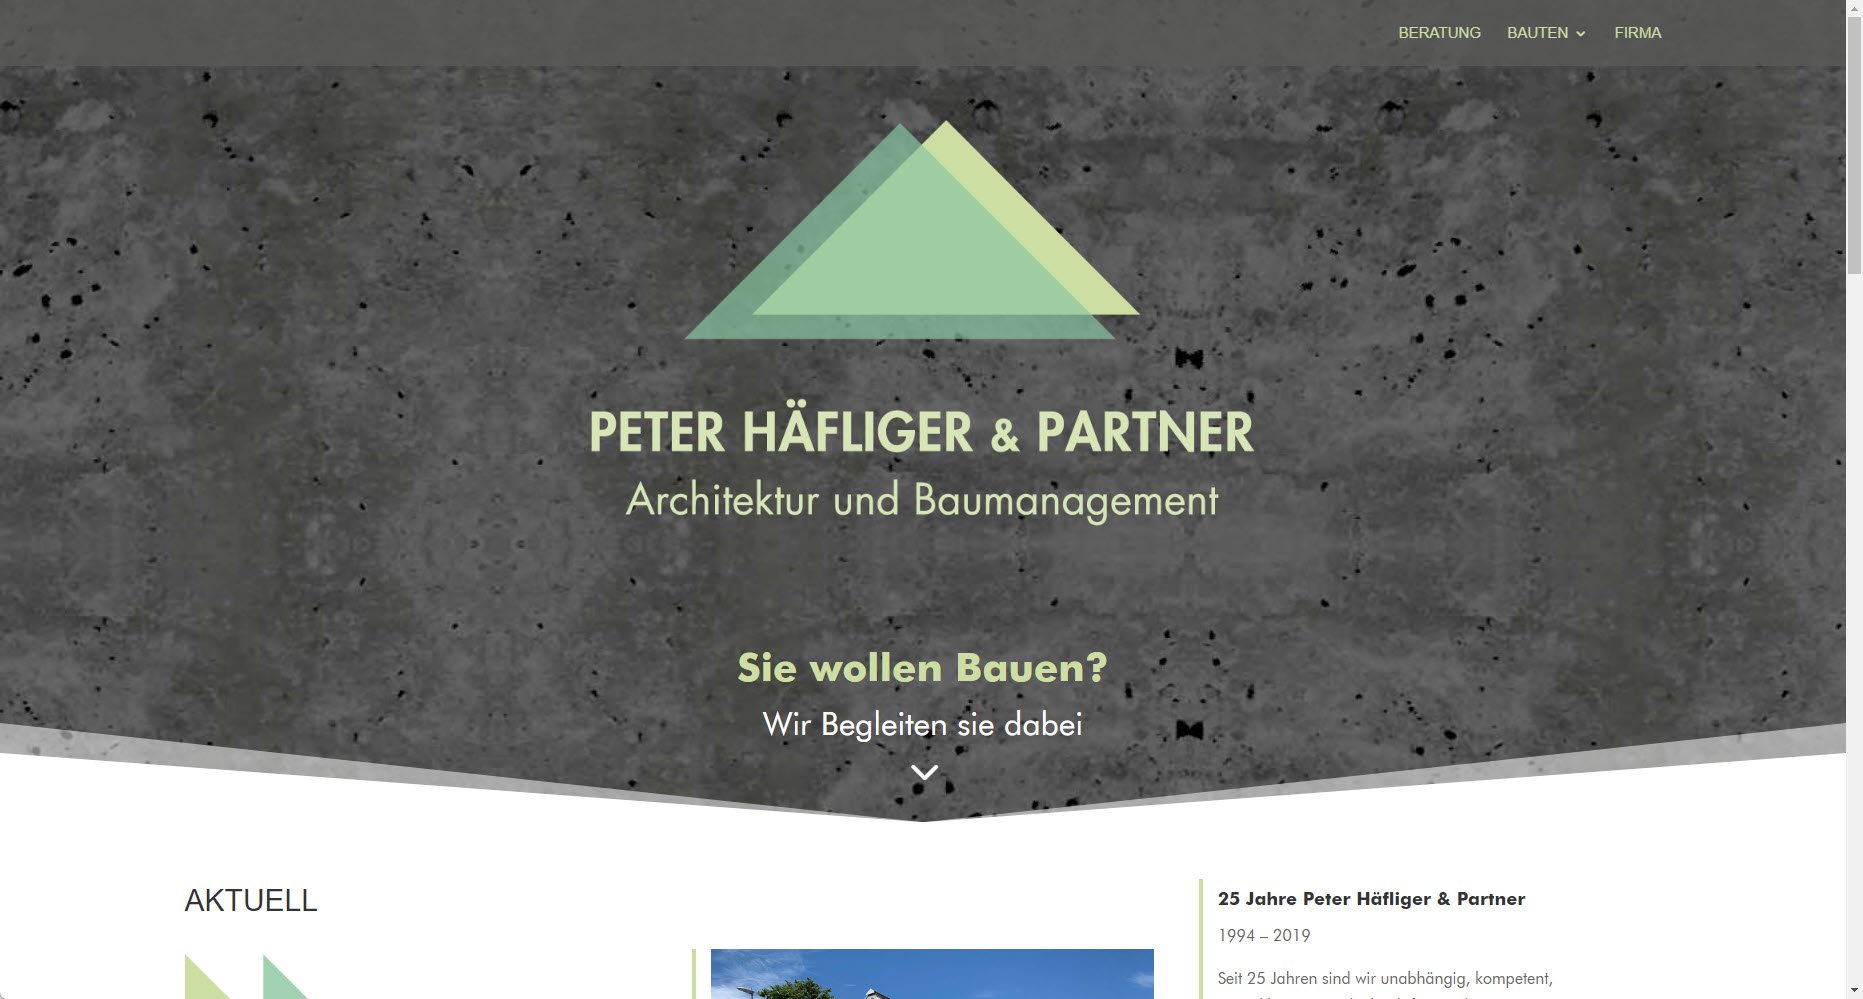 Peter Häfliger & Partner